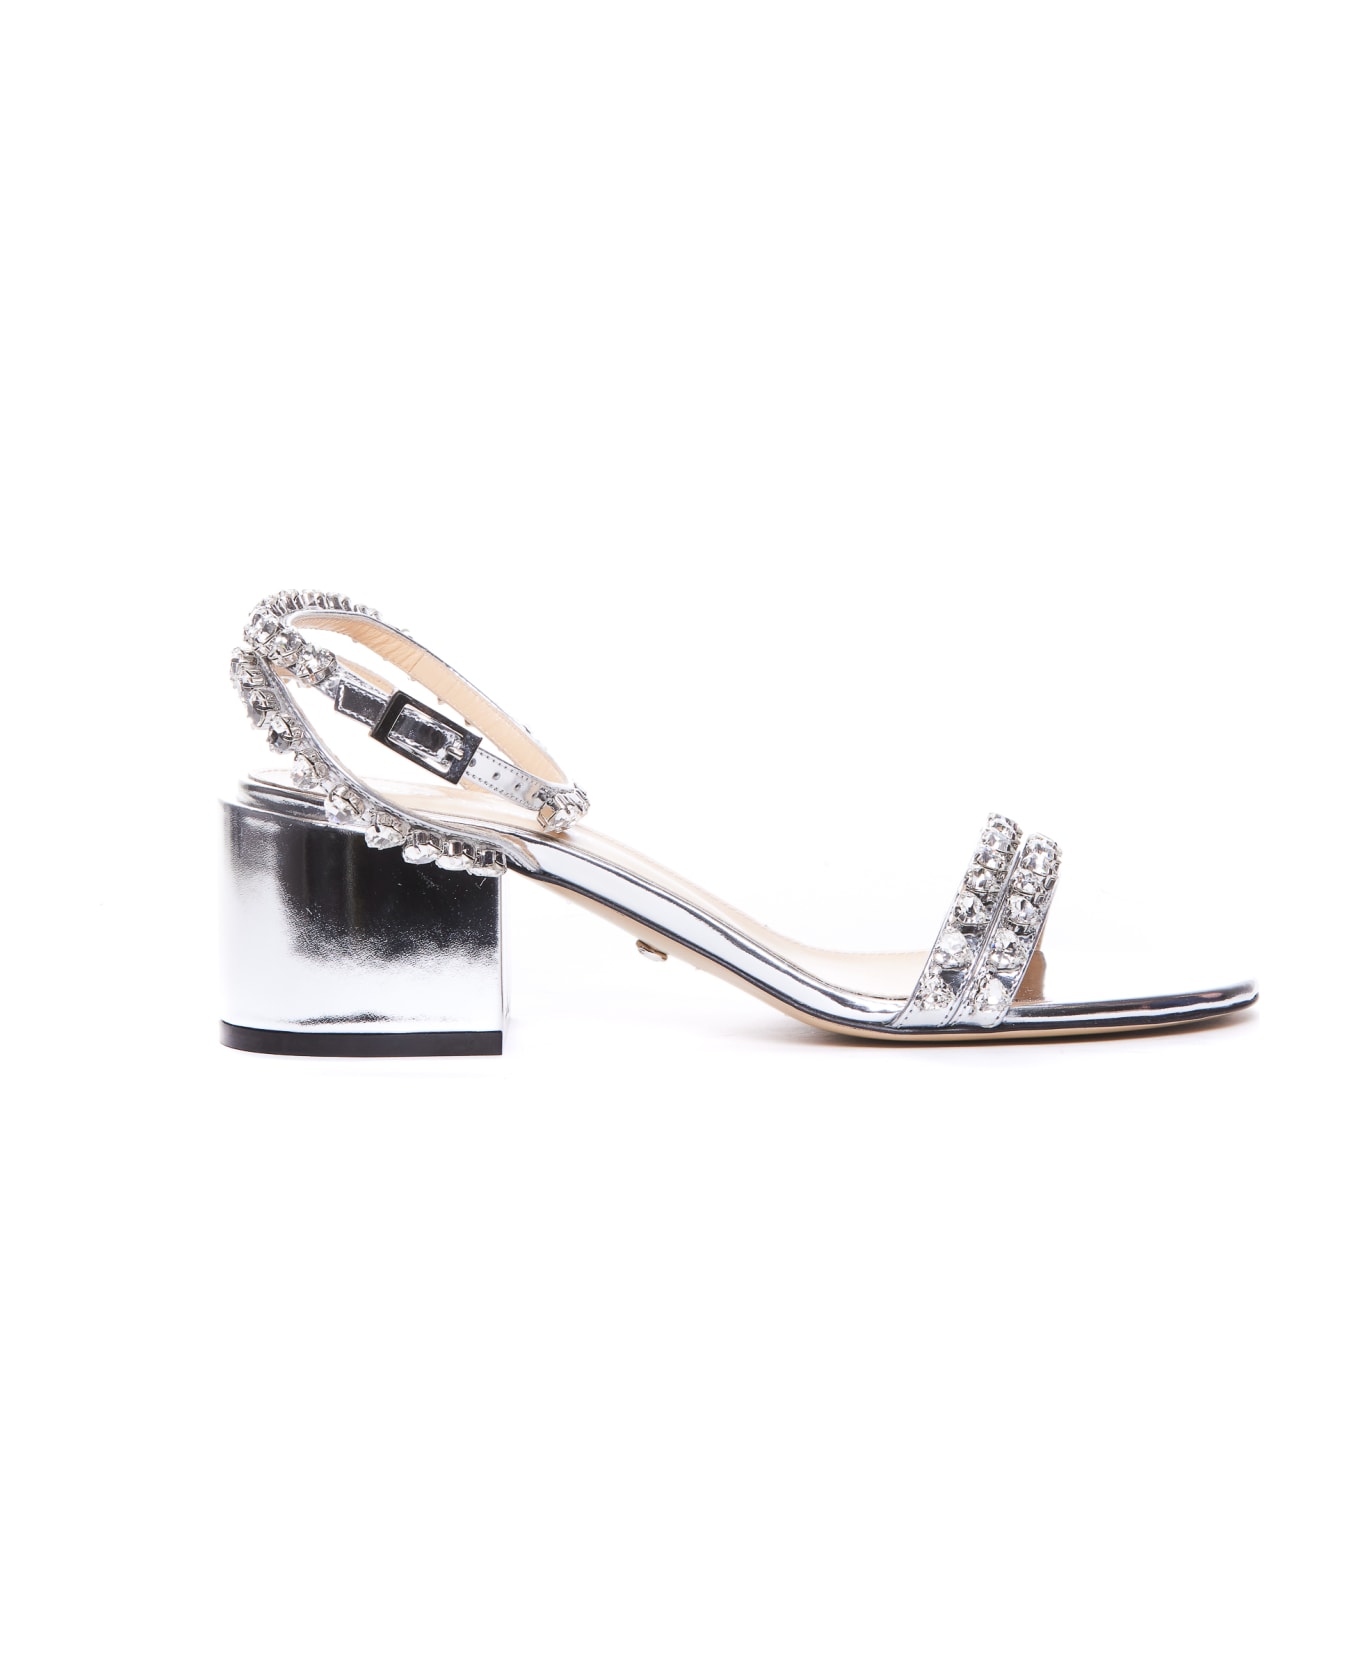 Mach & Mach Audrey Crystal Pump Sandals - Silver サンダル